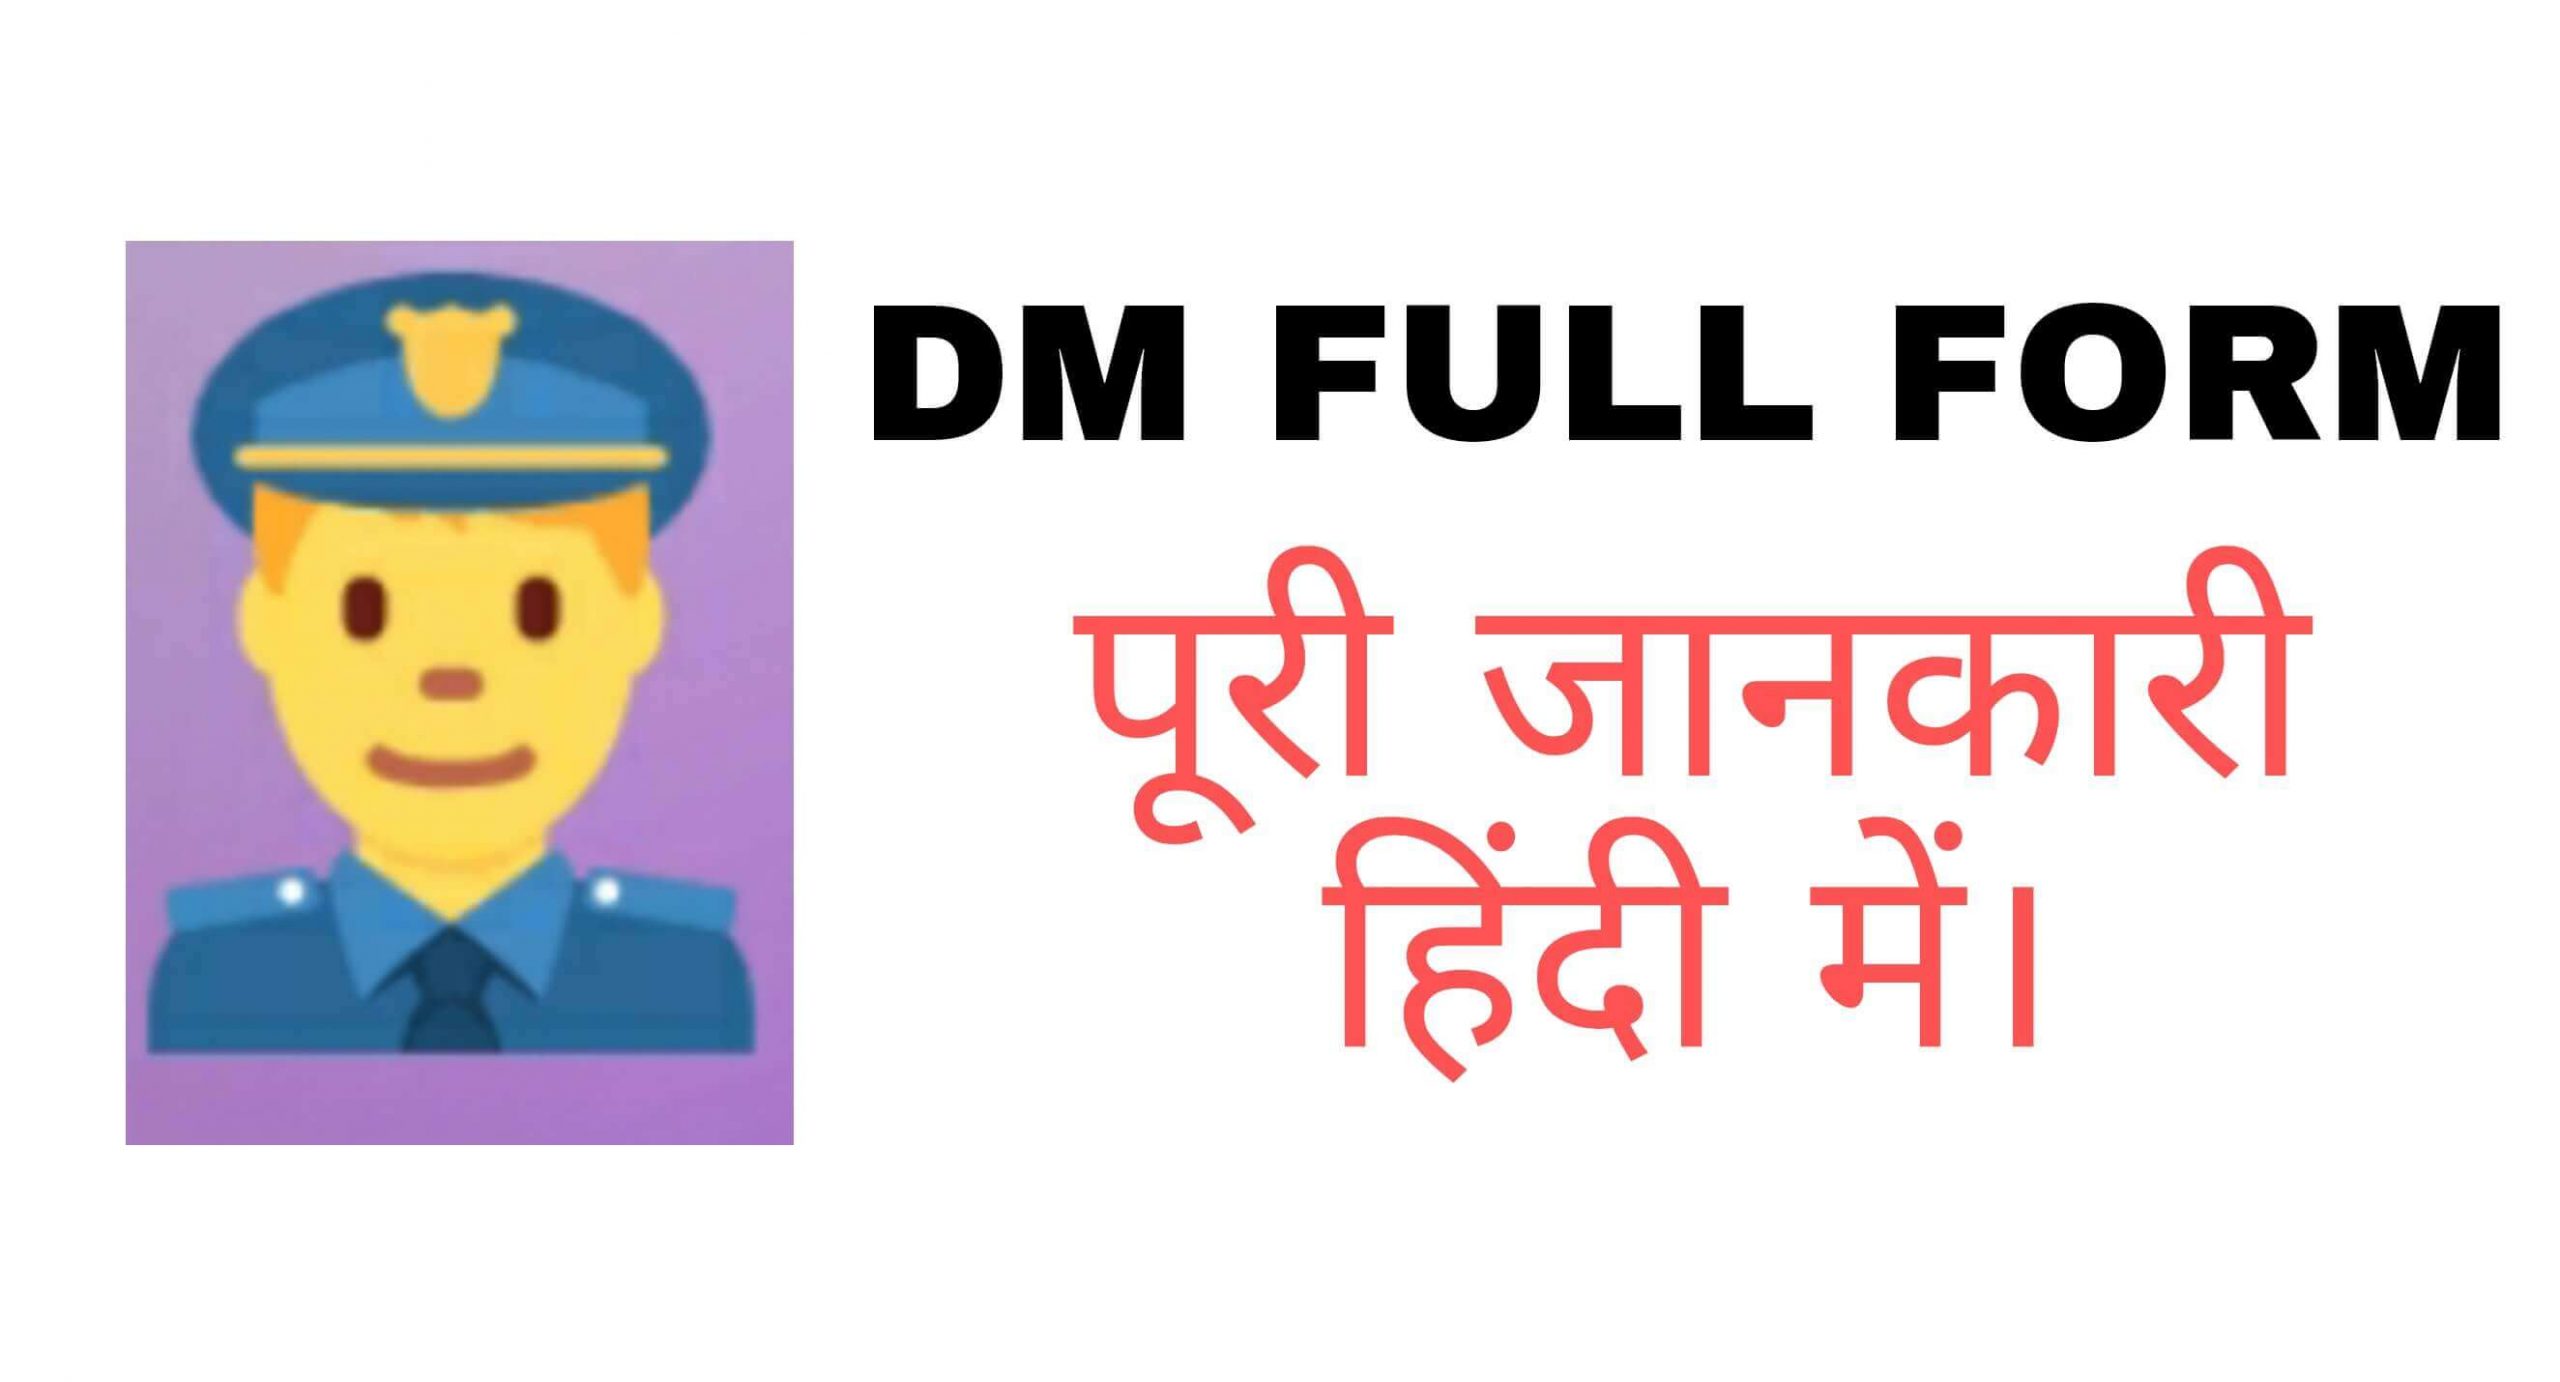 DM full form in Hindi free | डीएम का फुल फॉर्म